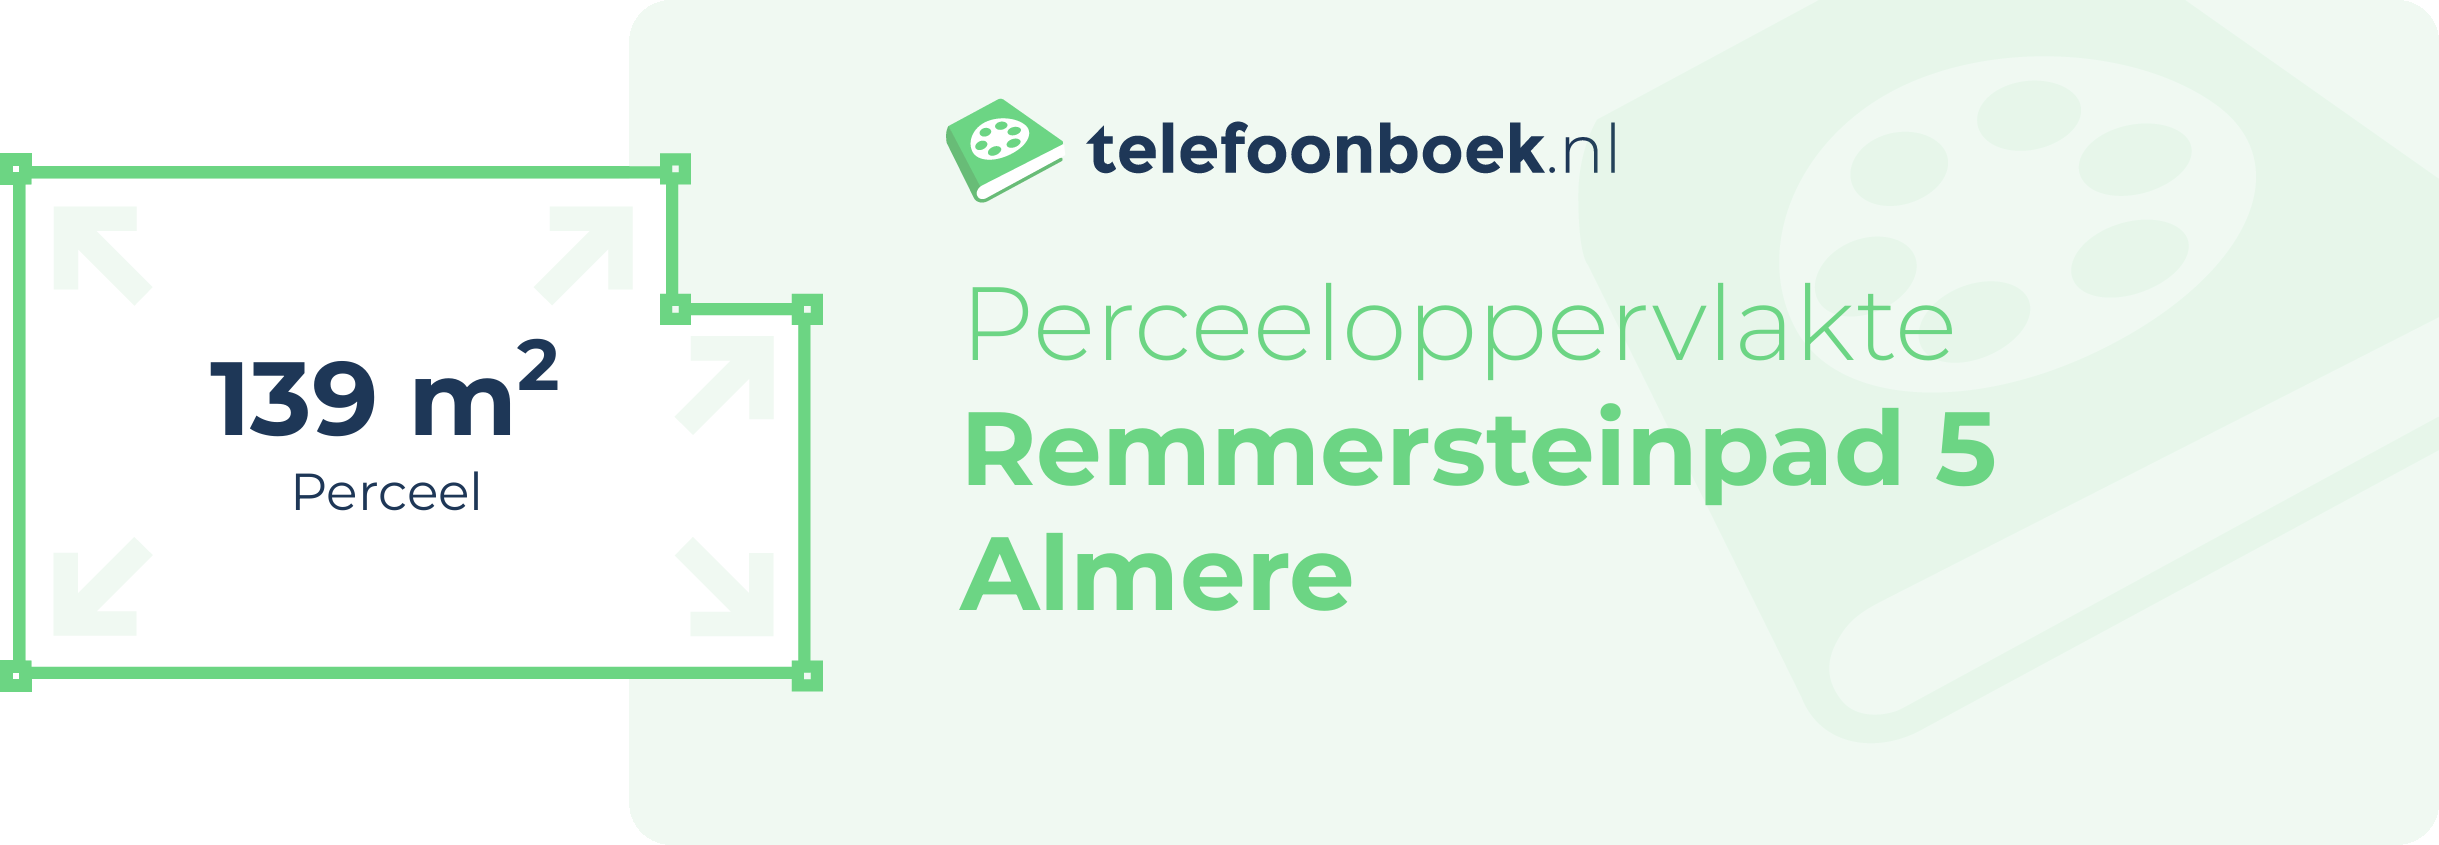 Perceeloppervlakte Remmersteinpad 5 Almere